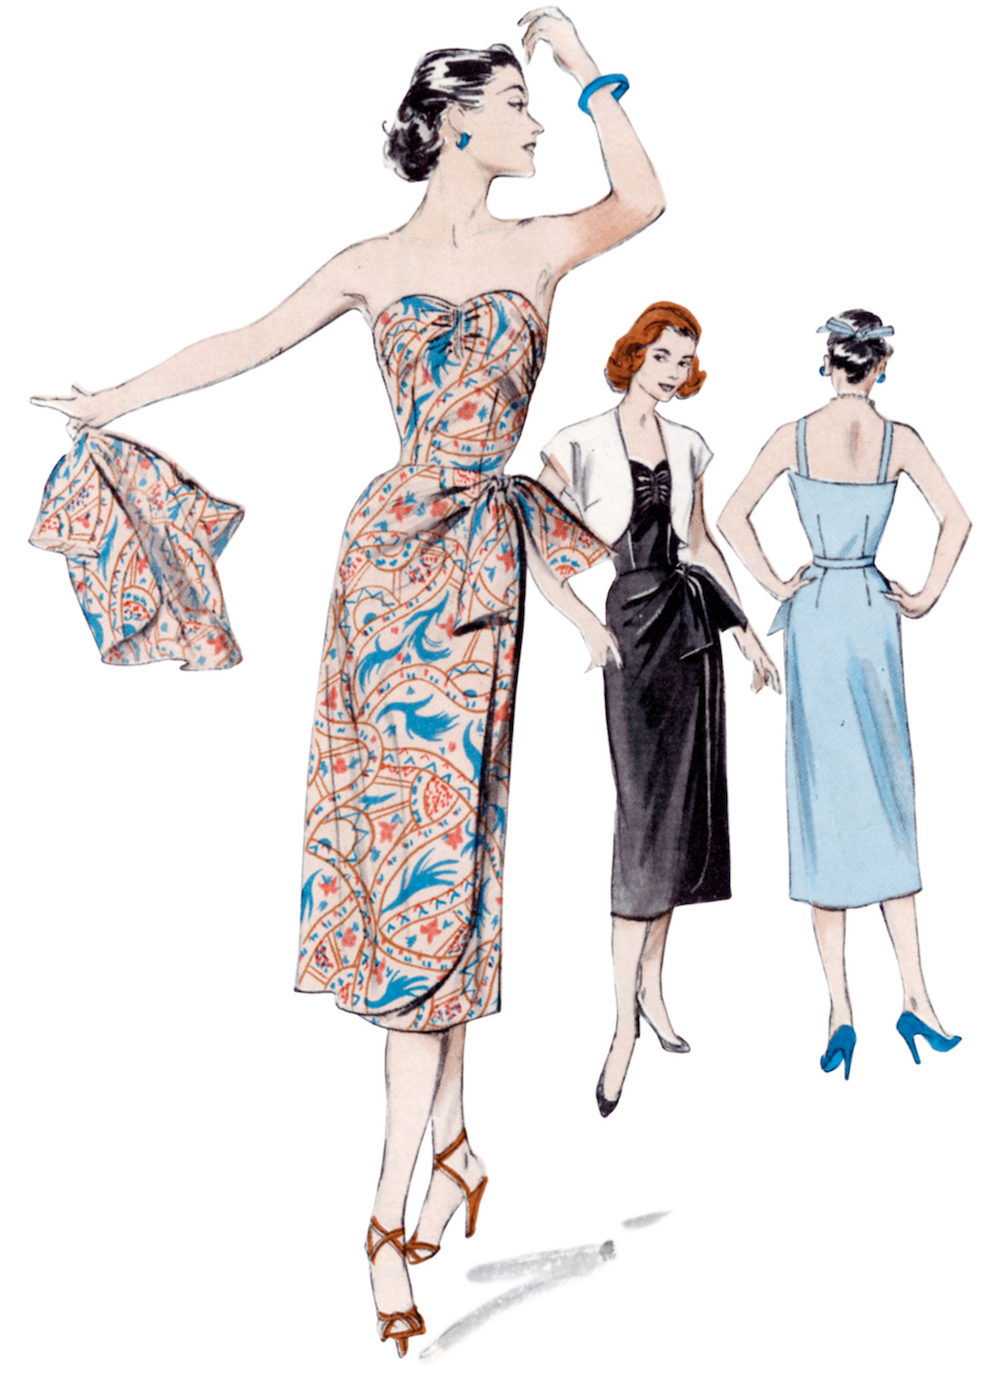 Butterick® Papierschnittmuster Retro 1950s Kleid Damen B6923